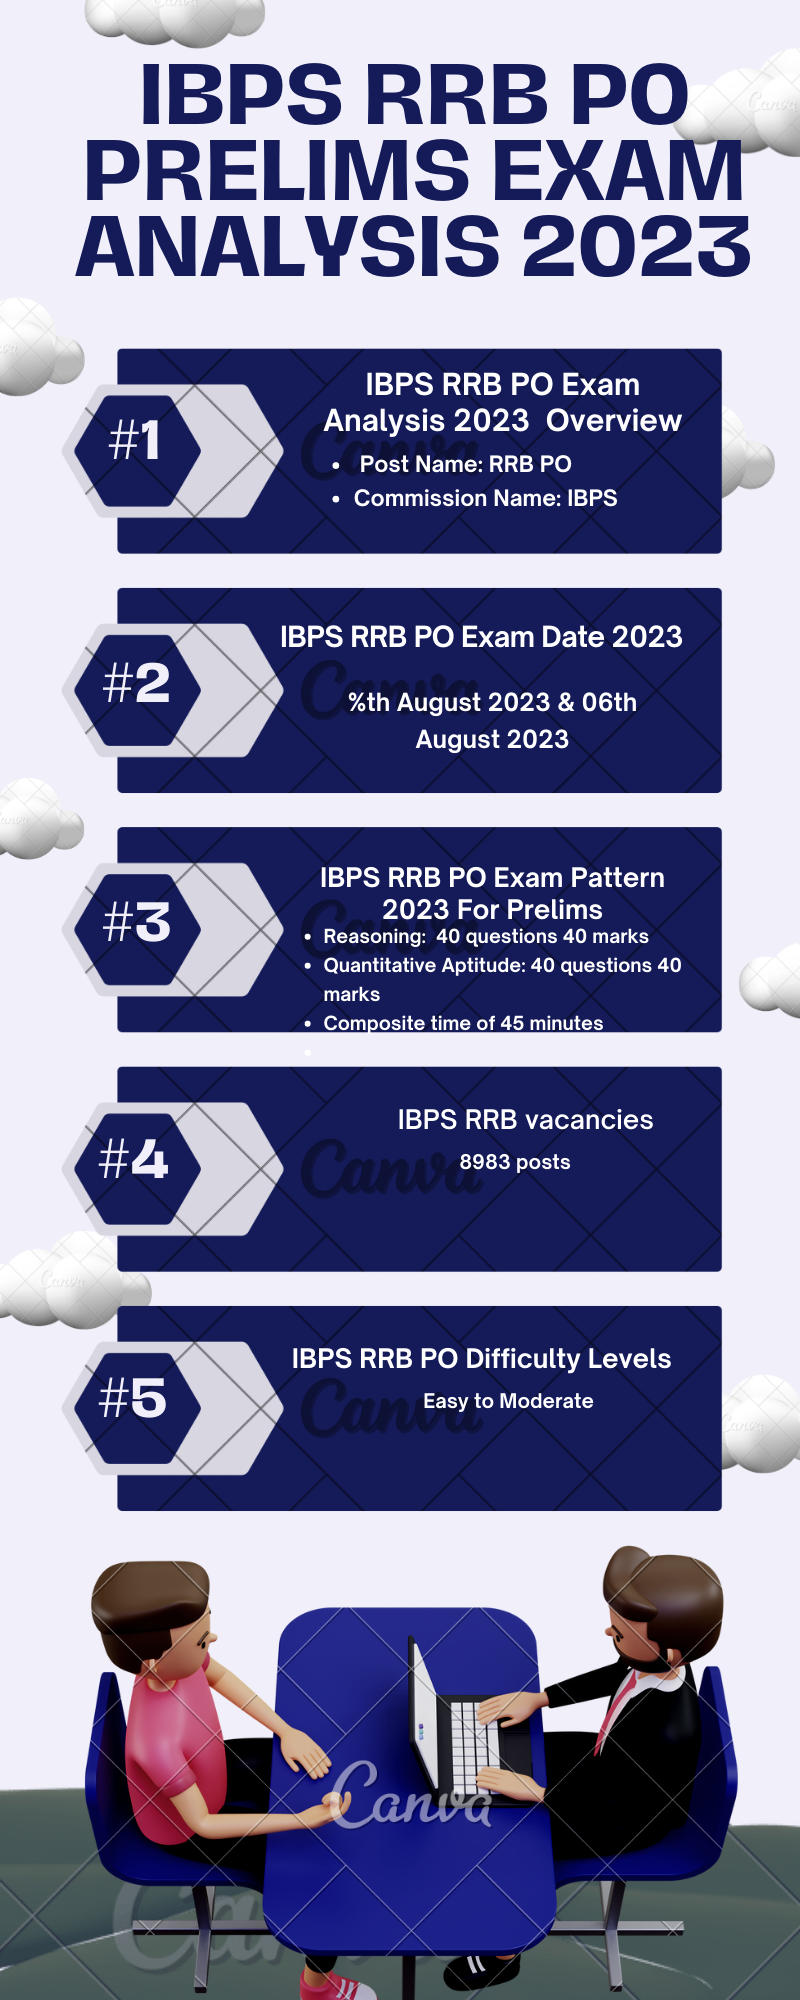 IBPS RRB PO ପରୀକ୍ଷା ବିଶ୍ଳେଷଣ 2023 ସିଫ୍ଟ 2, 5 ଅଗଷ୍ଟ ପରୀକ୍ଷା ସମୀକ୍ଷା_3.1